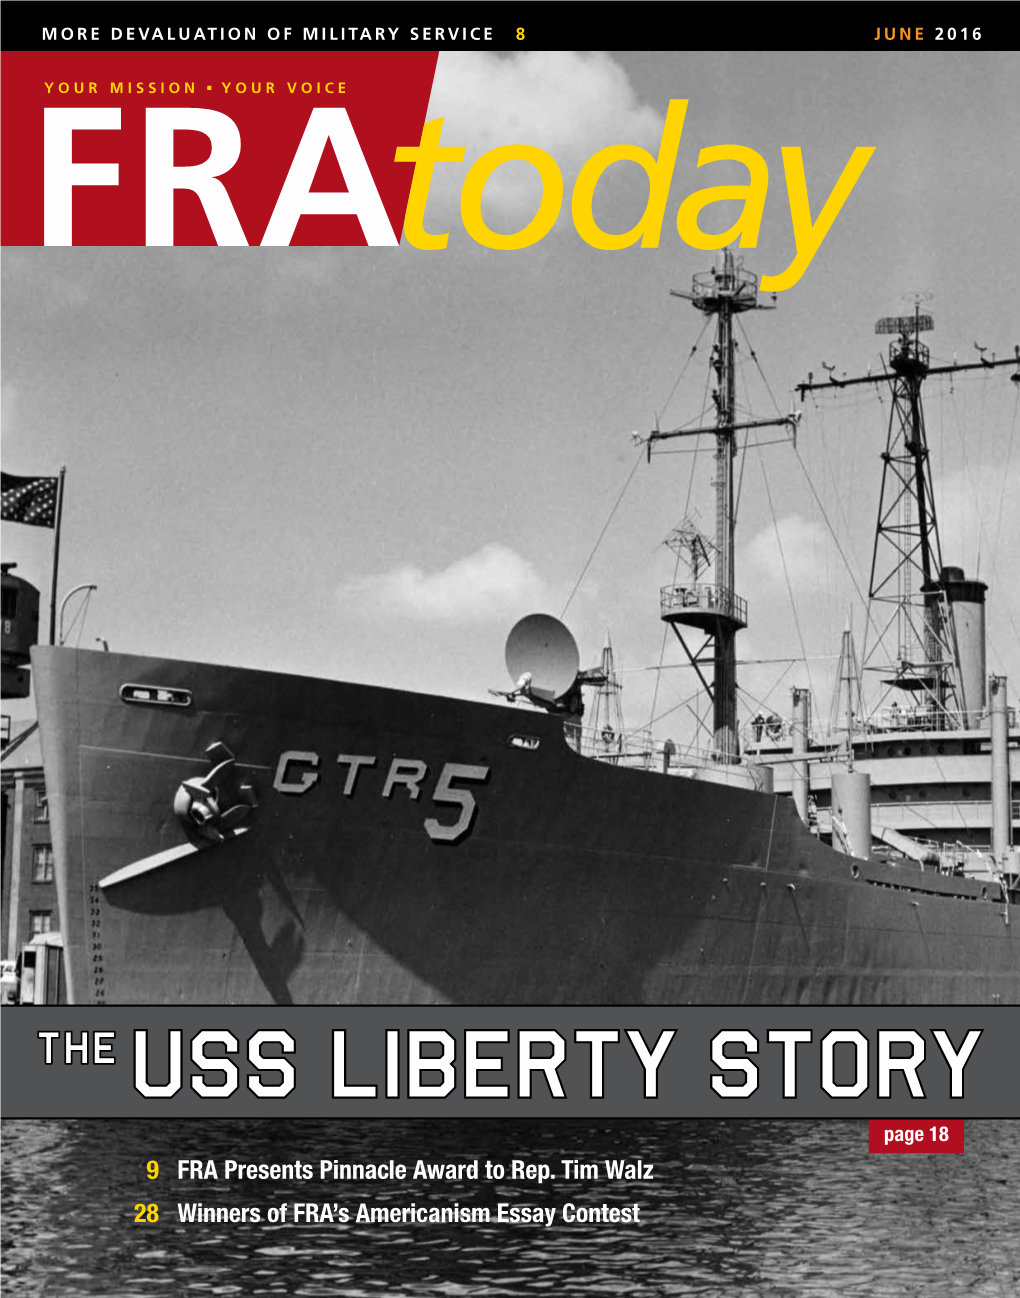 USS Liberty Story Page 18 9 FRA Presents Pinnacle Award to Rep